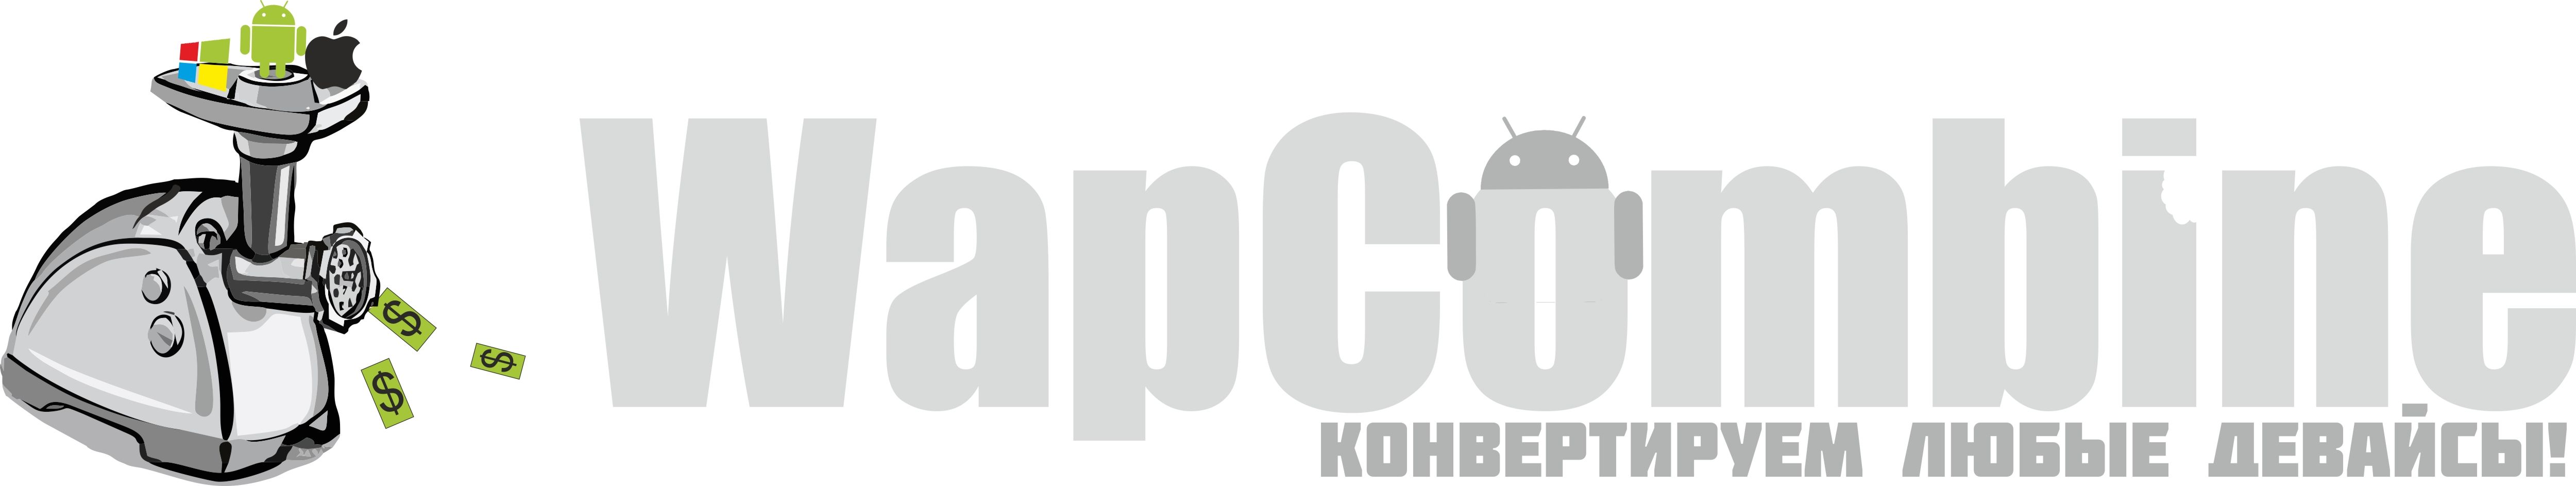 Логотип для мобильной партнерской программы - дизайнер ov07